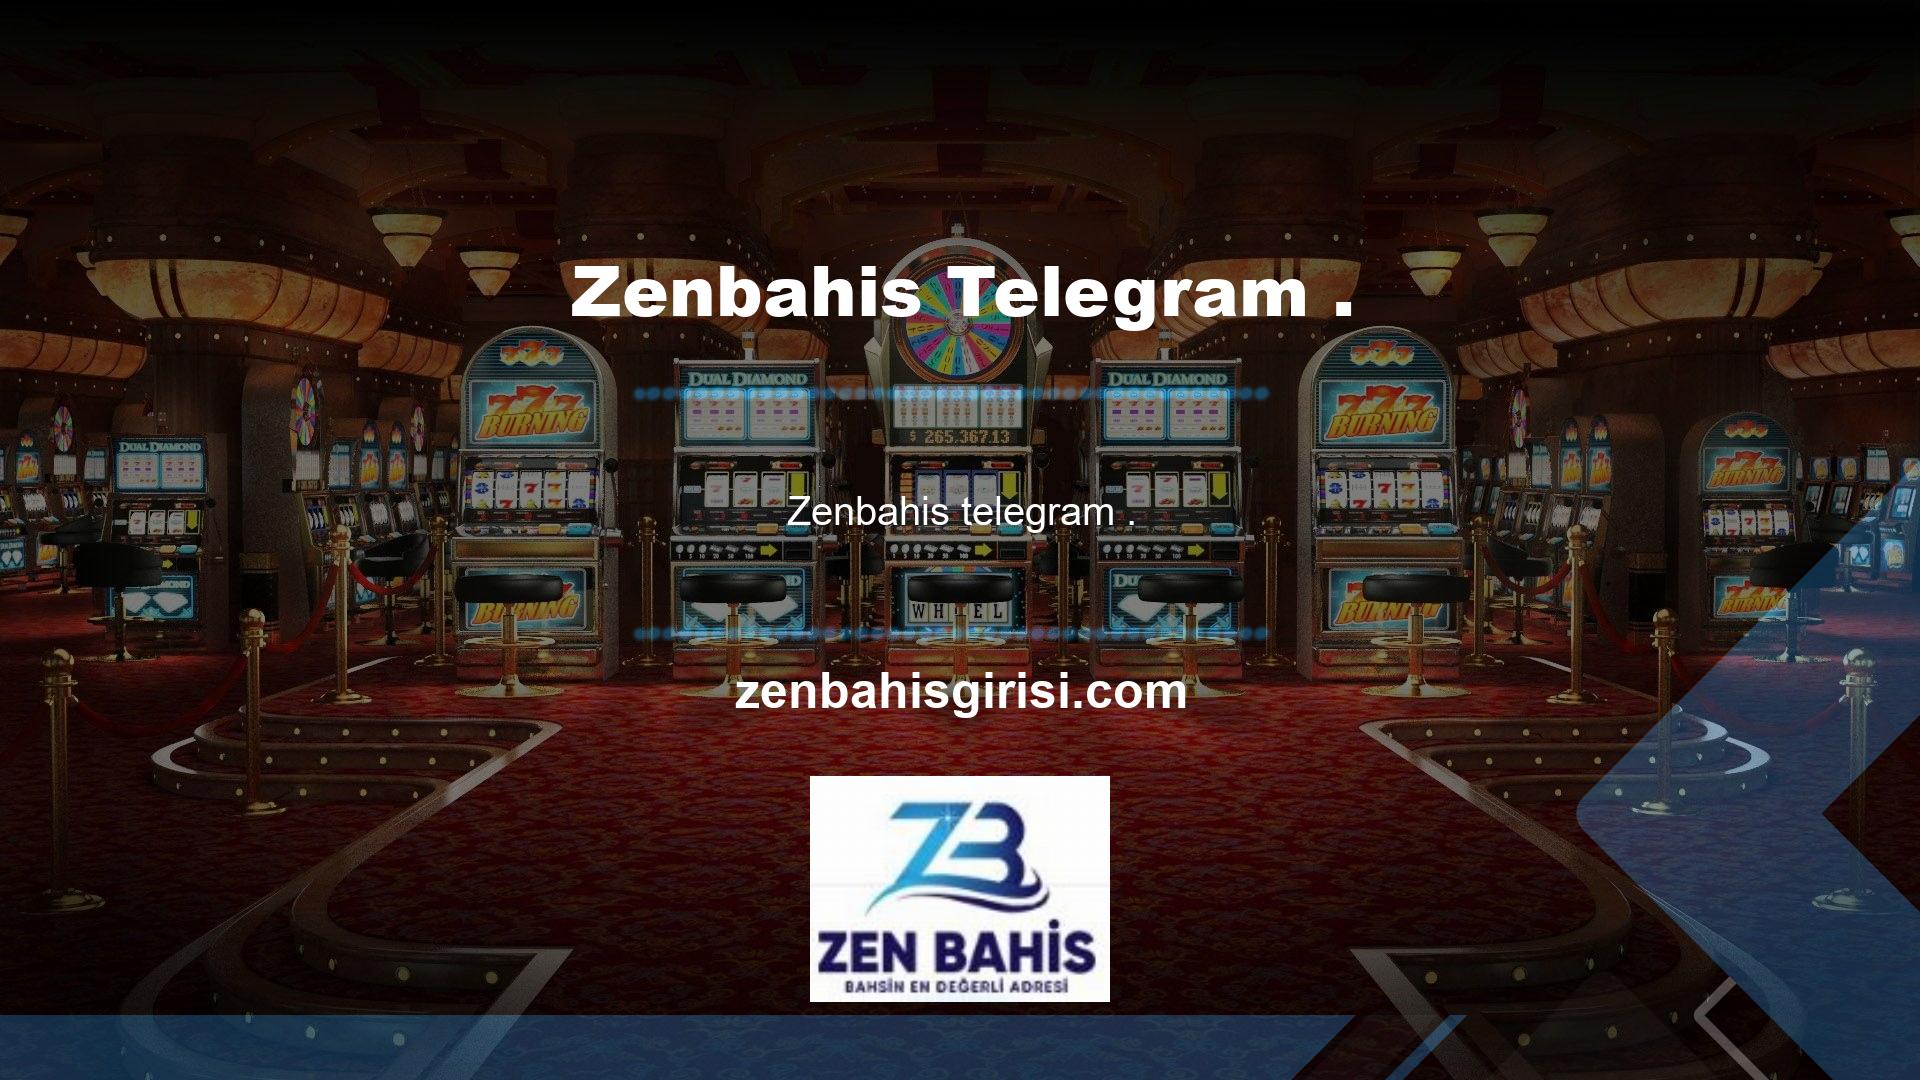 Zenbahis Telegram kanalı, yayına girdi ve o zamandan bu yana müşterilerini adres değişikliklerinden haberdar ediyor